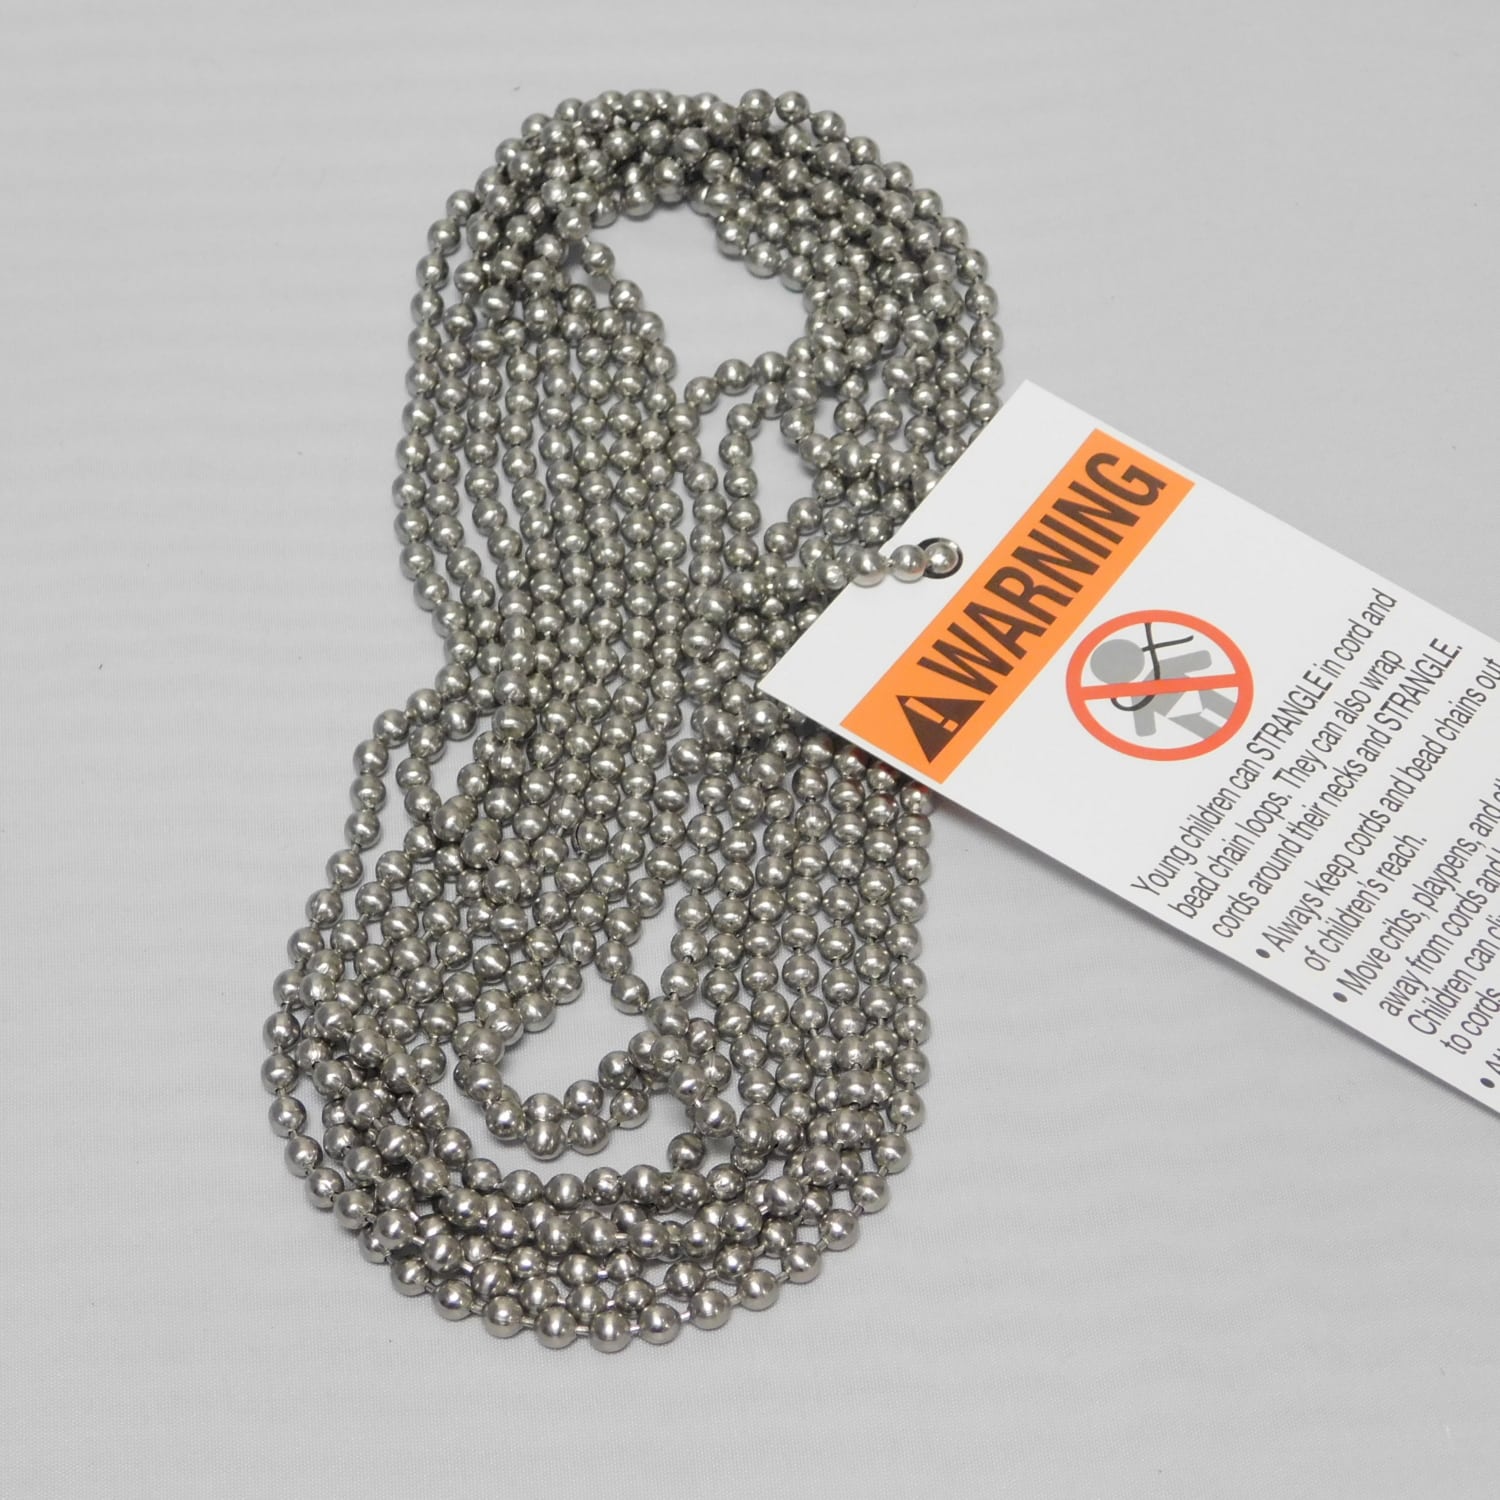 10 Stainless Steel Bead Chain Loop 